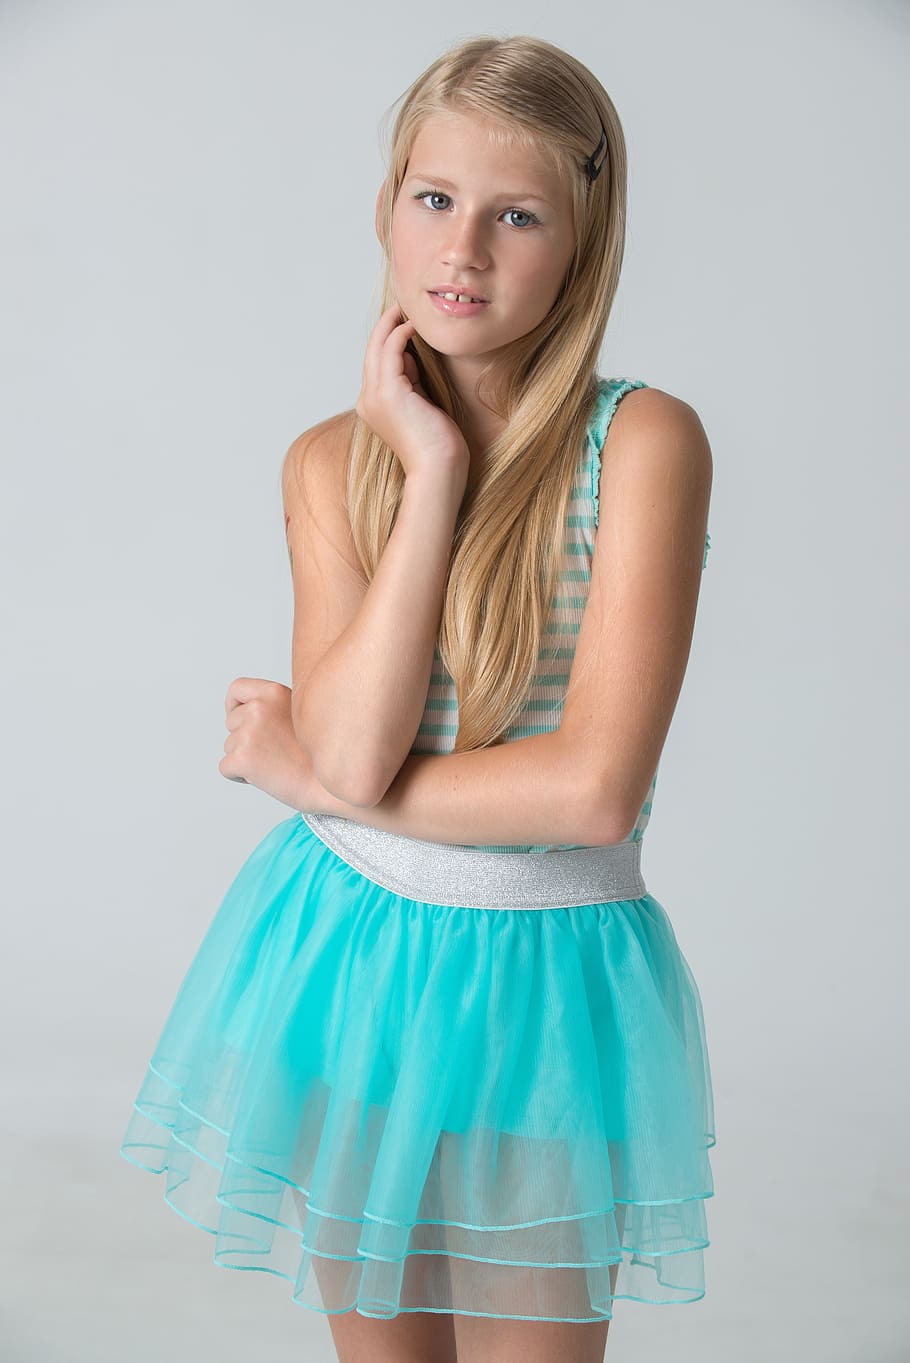 blonde-haired, girl, white, blue, striped, sleeveless dress, portrait, model, baby, photographing children